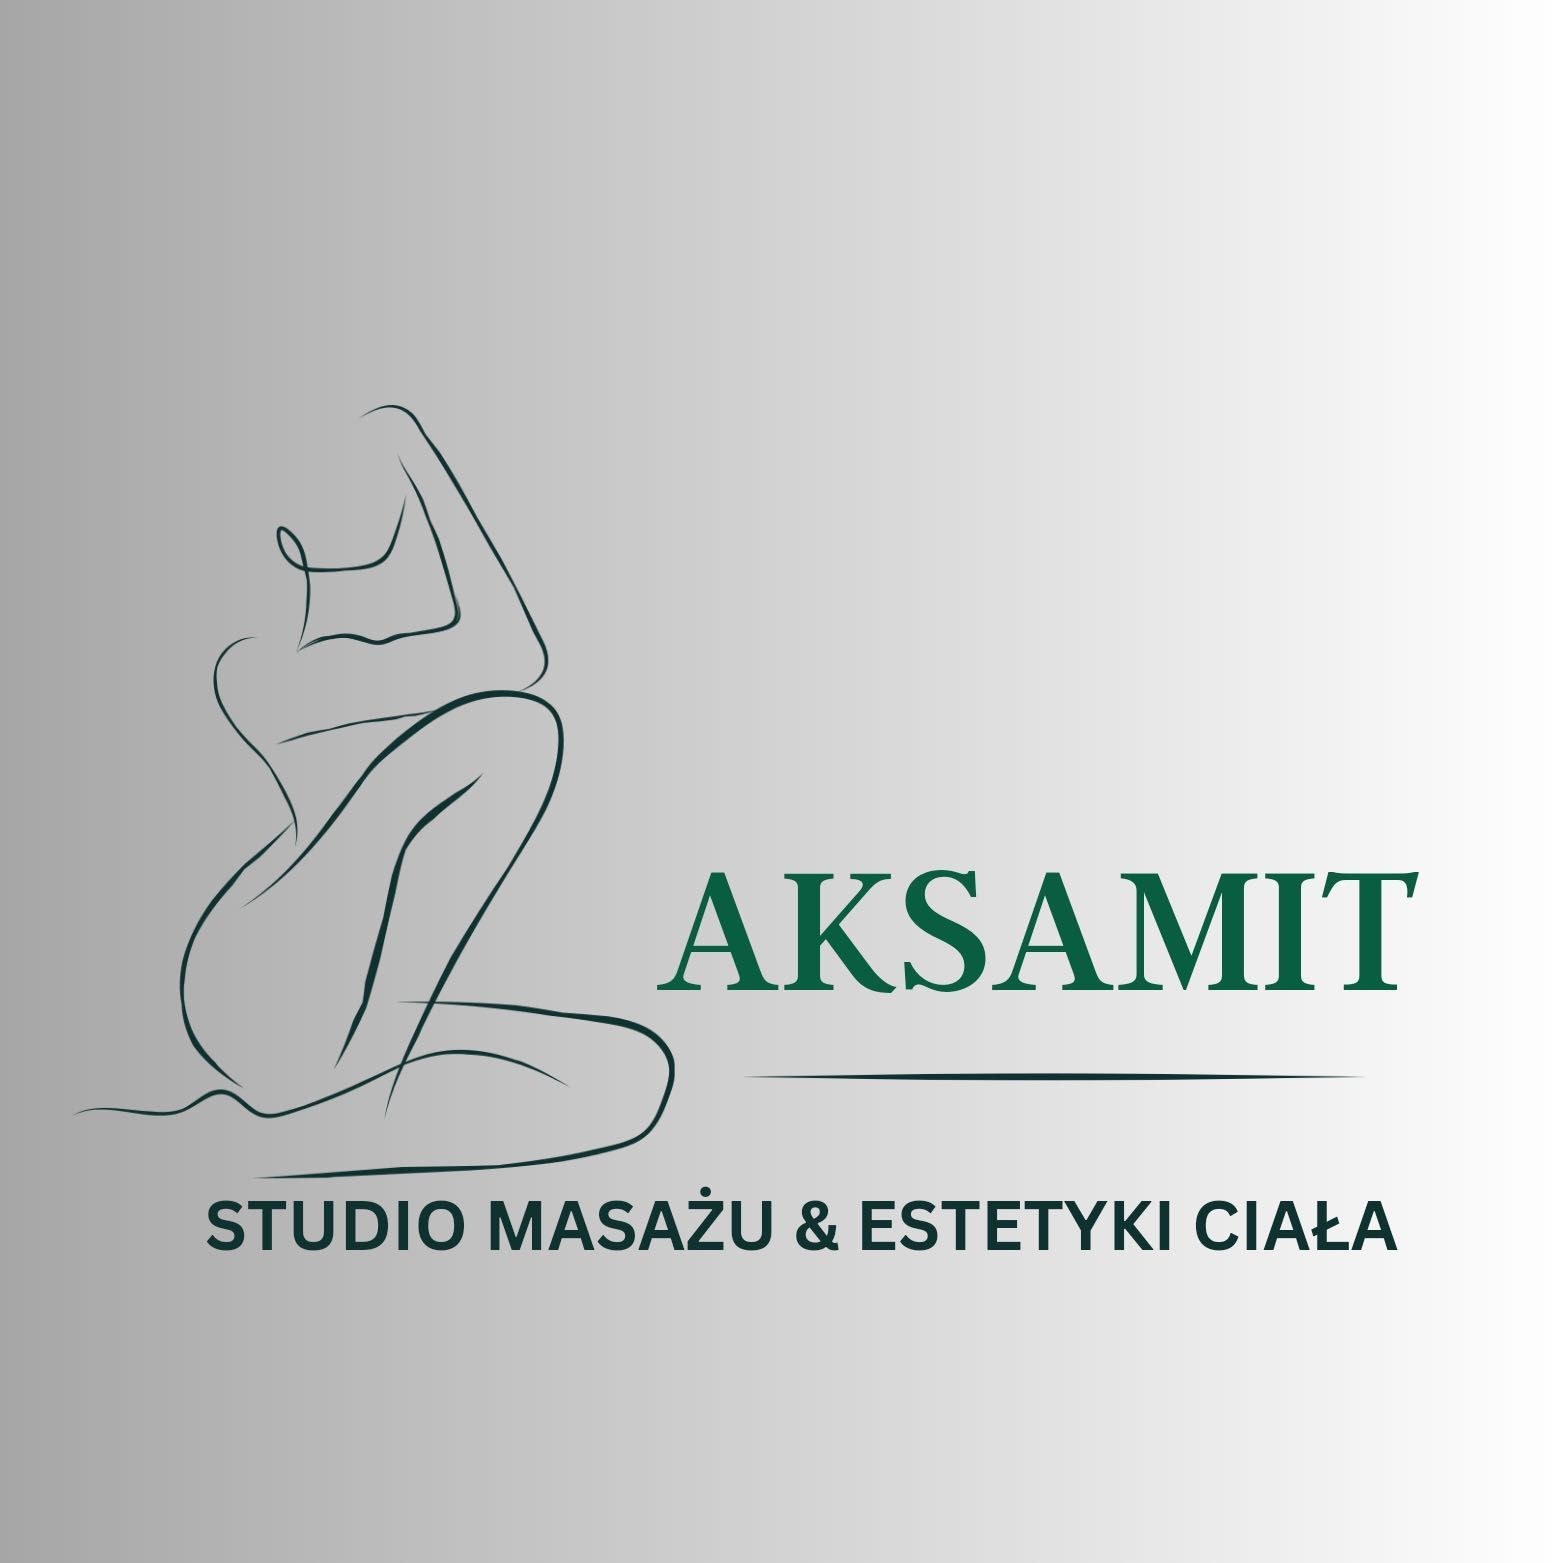 AKSAMIT STUDIO MASAŻU & ESTETYKI CIALA, Chopina 36, c.h.Arbat 1 piętro, 83-000, Pruszcz Gdański